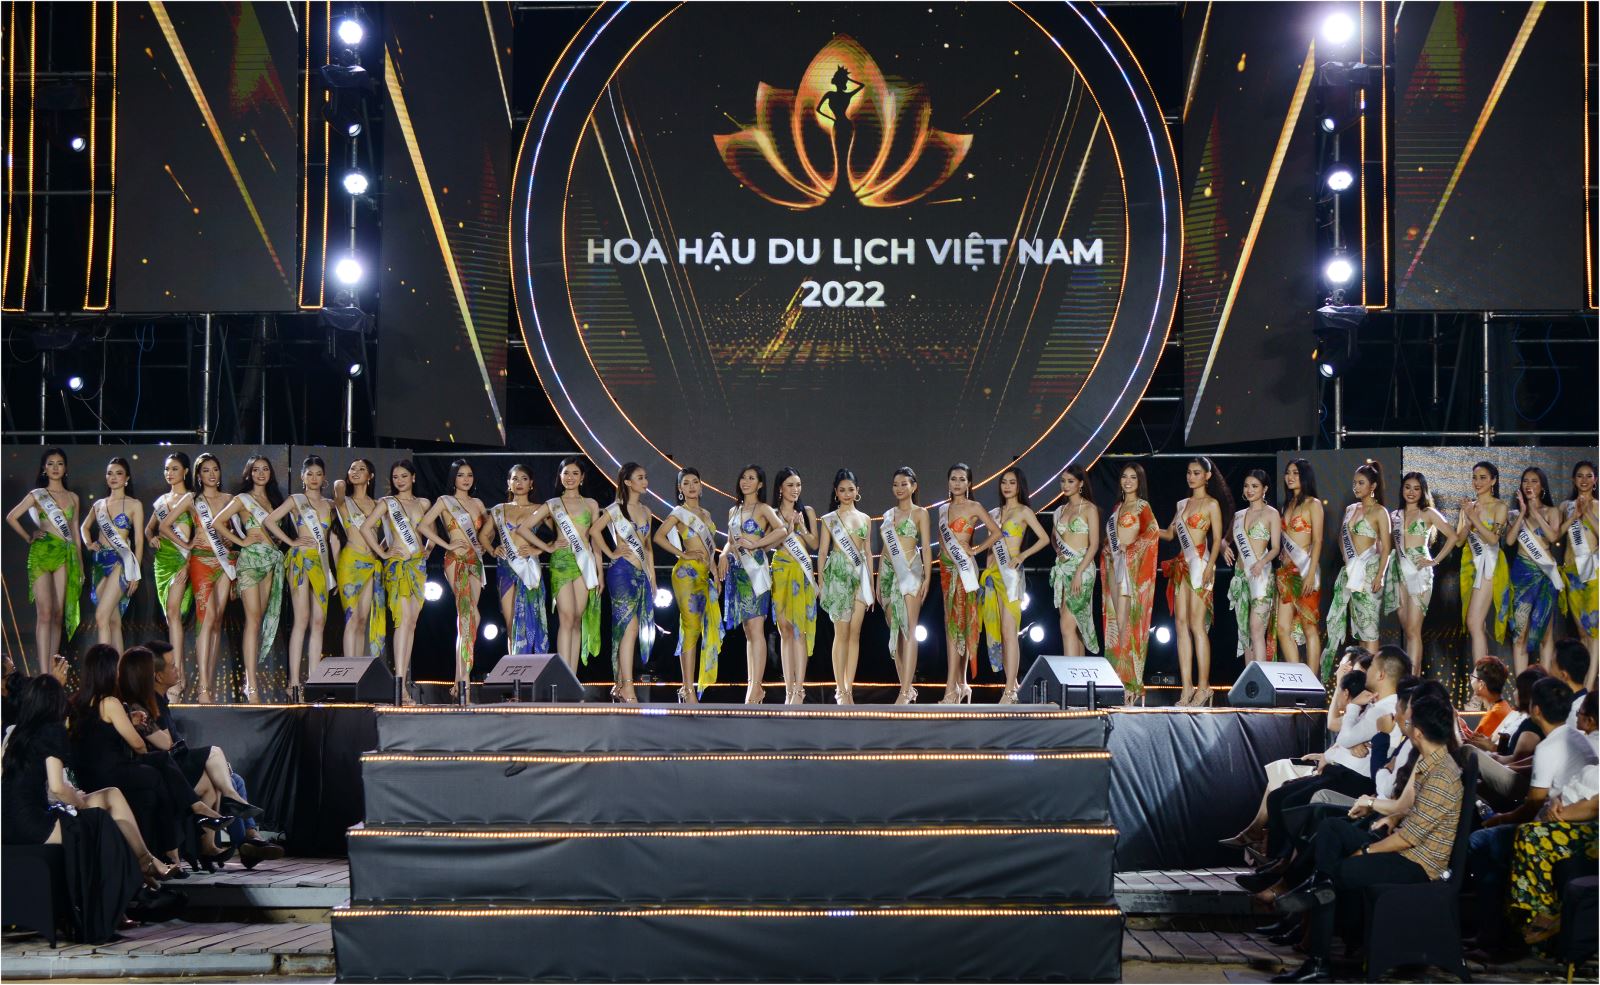 Dàn thí sinh Hoa hậu Du lịch Việt Nam khoe dáng nóng bỏng với bikini trong đêm thi 'Người đẹp biển' - Ảnh 4.